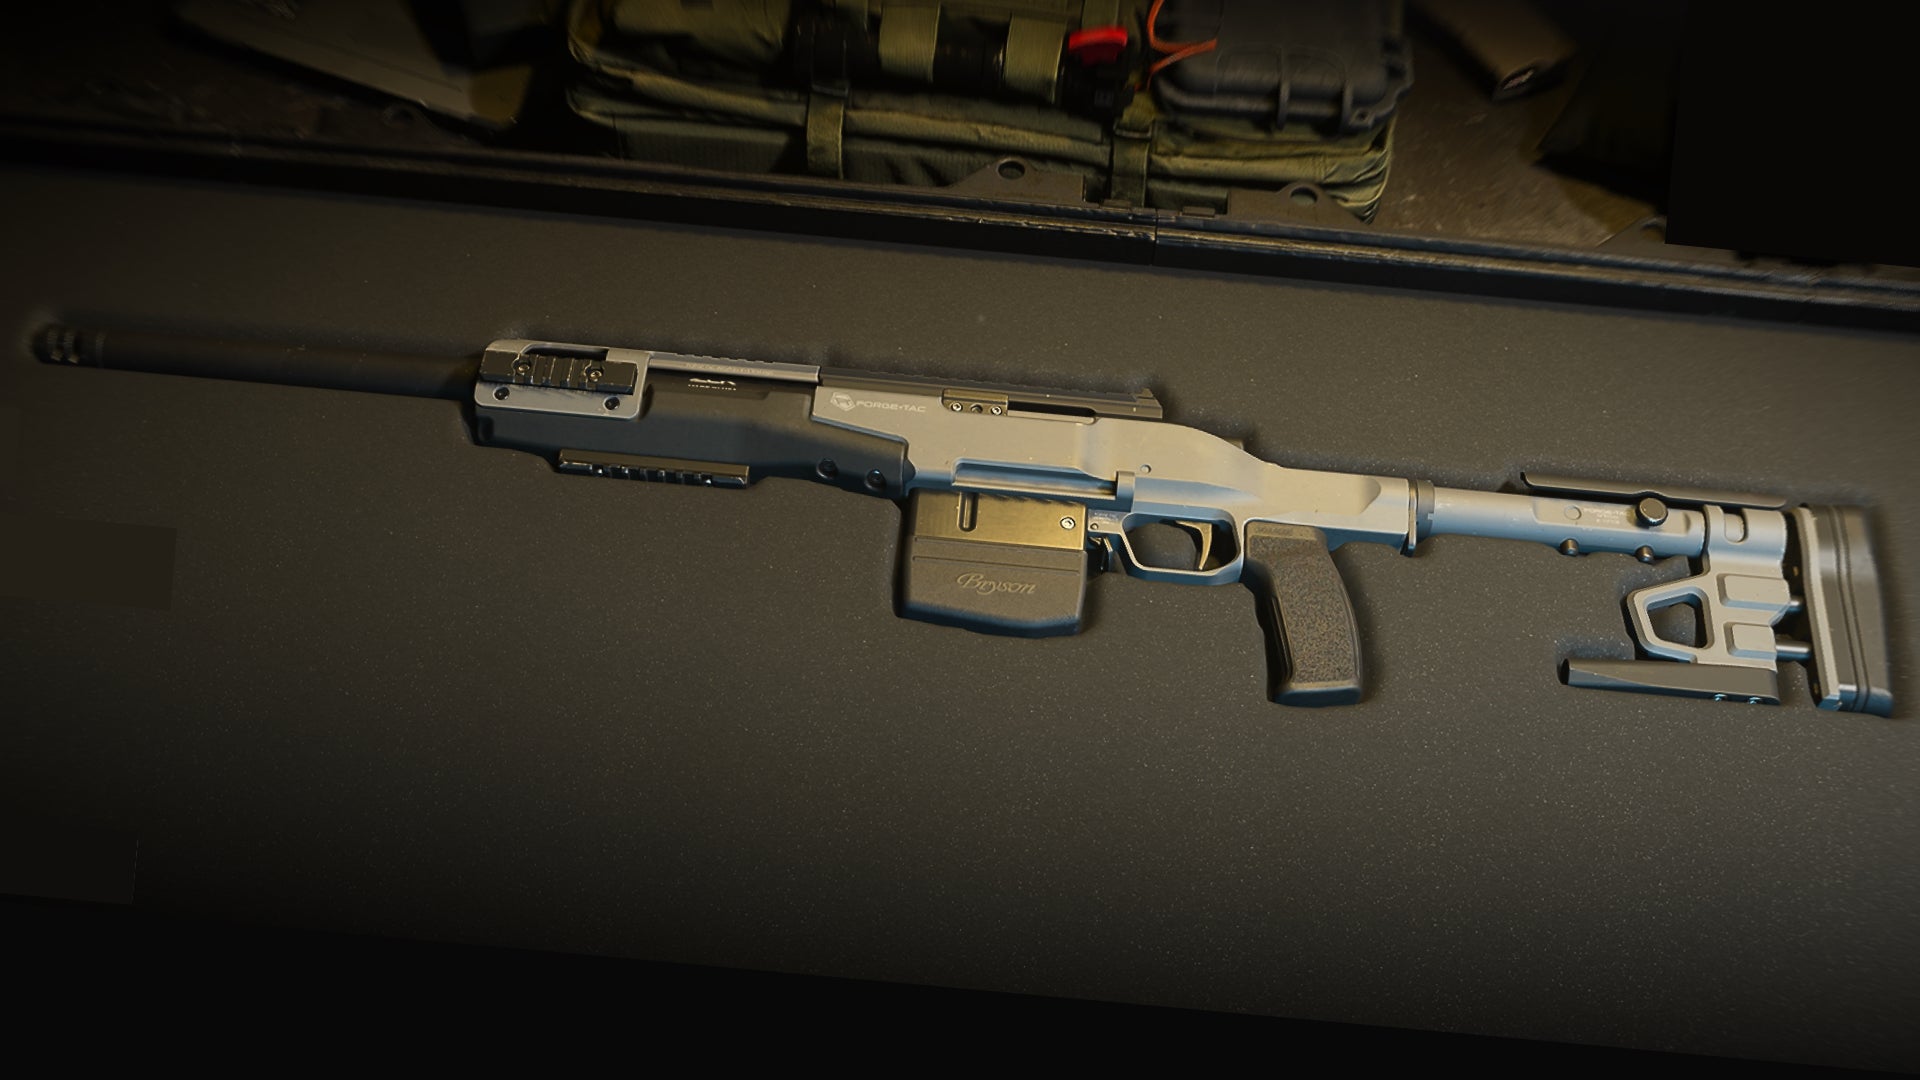 A close-up of the SA-B 50 Marksman Rifle in the Modern Warfare 2 Gunsmith screen.